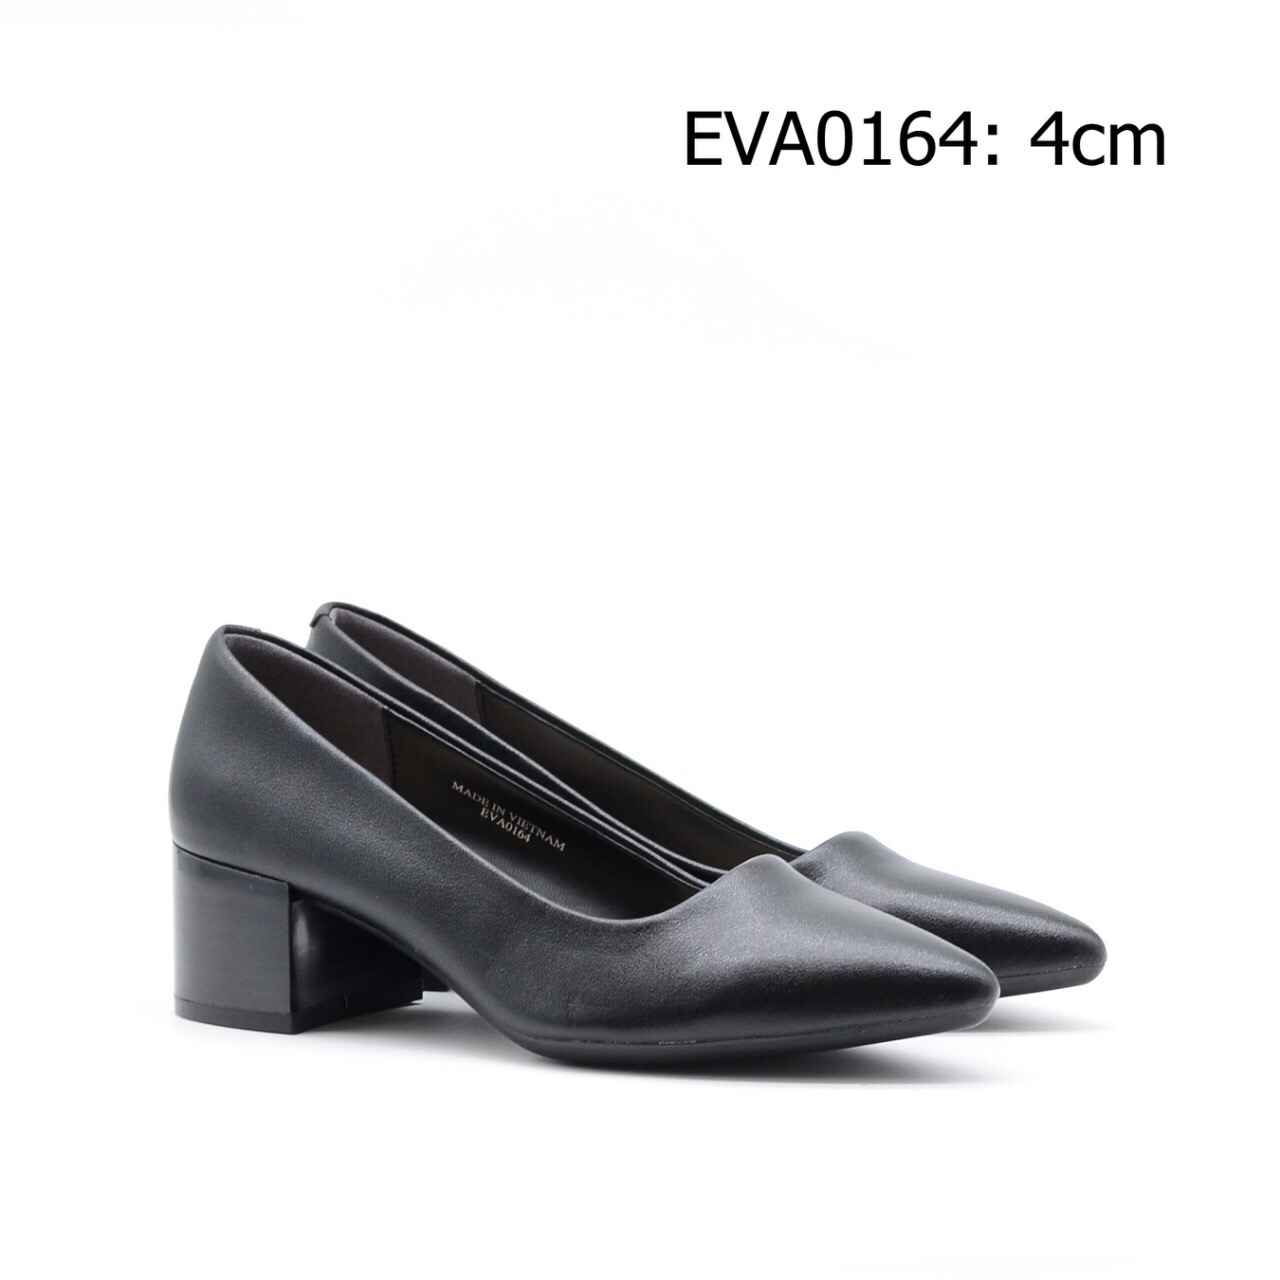 Giày công sở đế vuông EVA0164 cao 4cm mang lại nét đẹp trẻ trung, thanh lịch